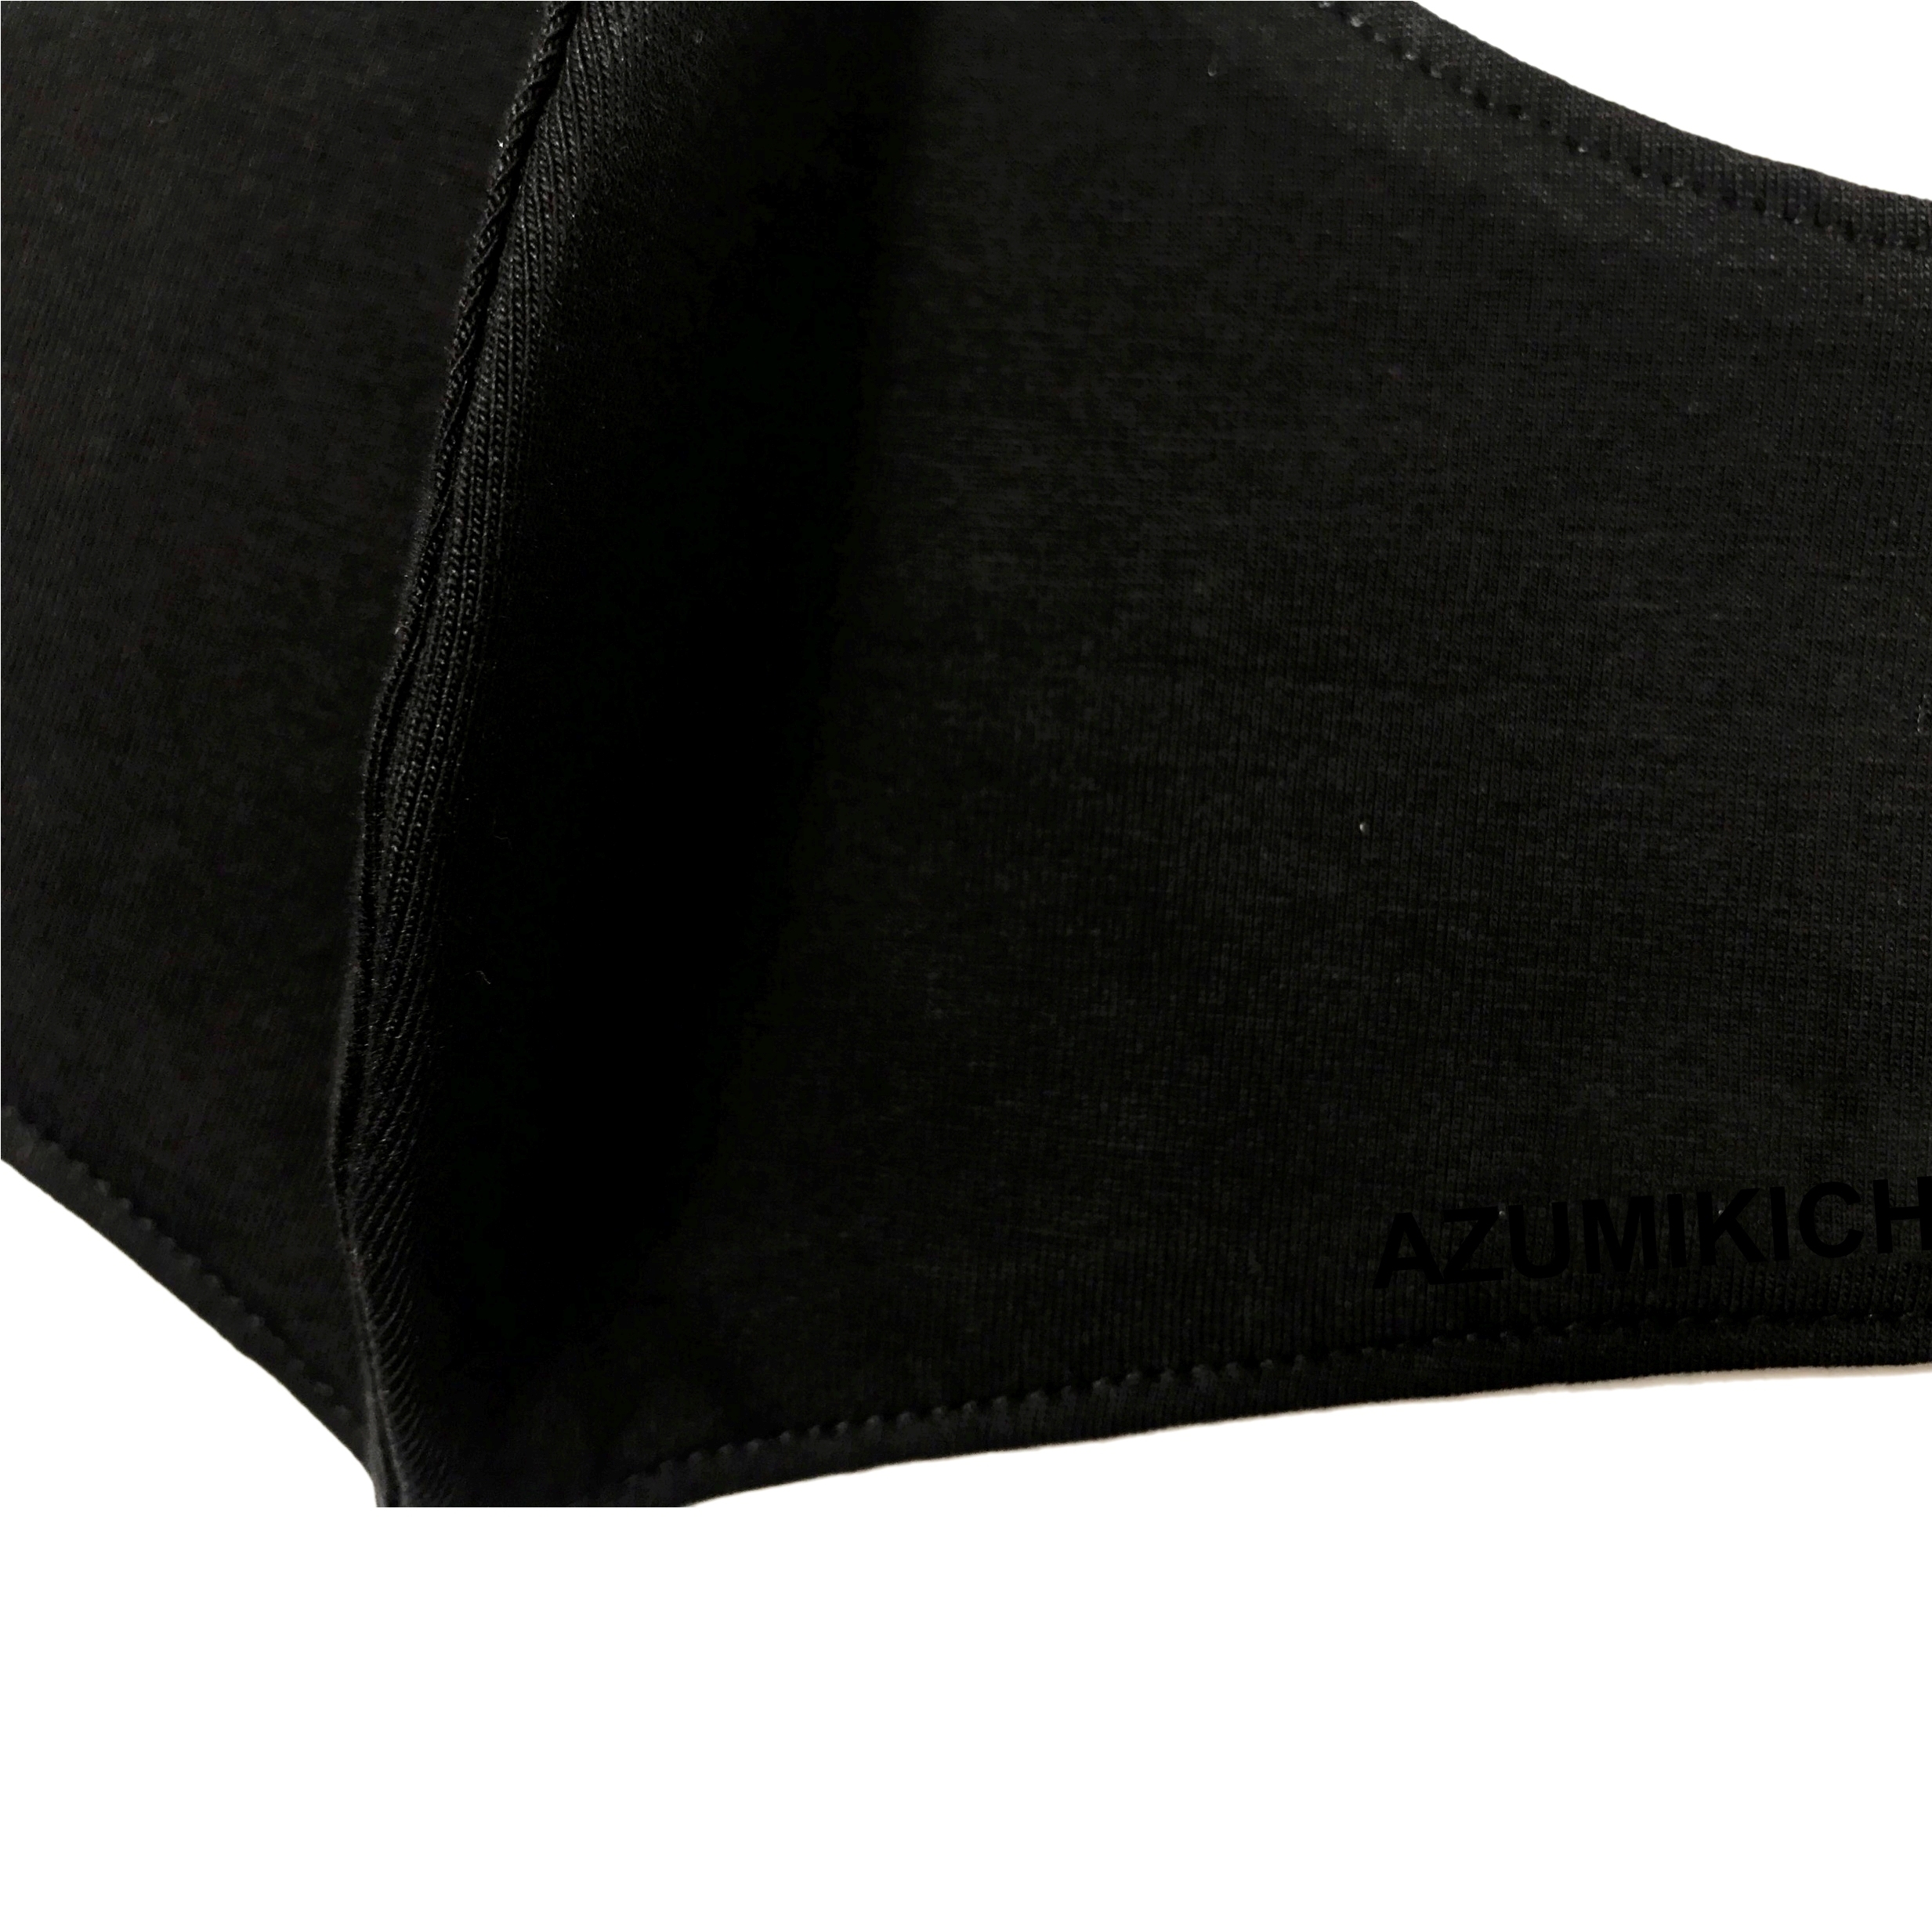 Hình ảnh Khẩu trang vải Azumikichi màu đen, khẩu trang thời trang cao cấp sang trọng